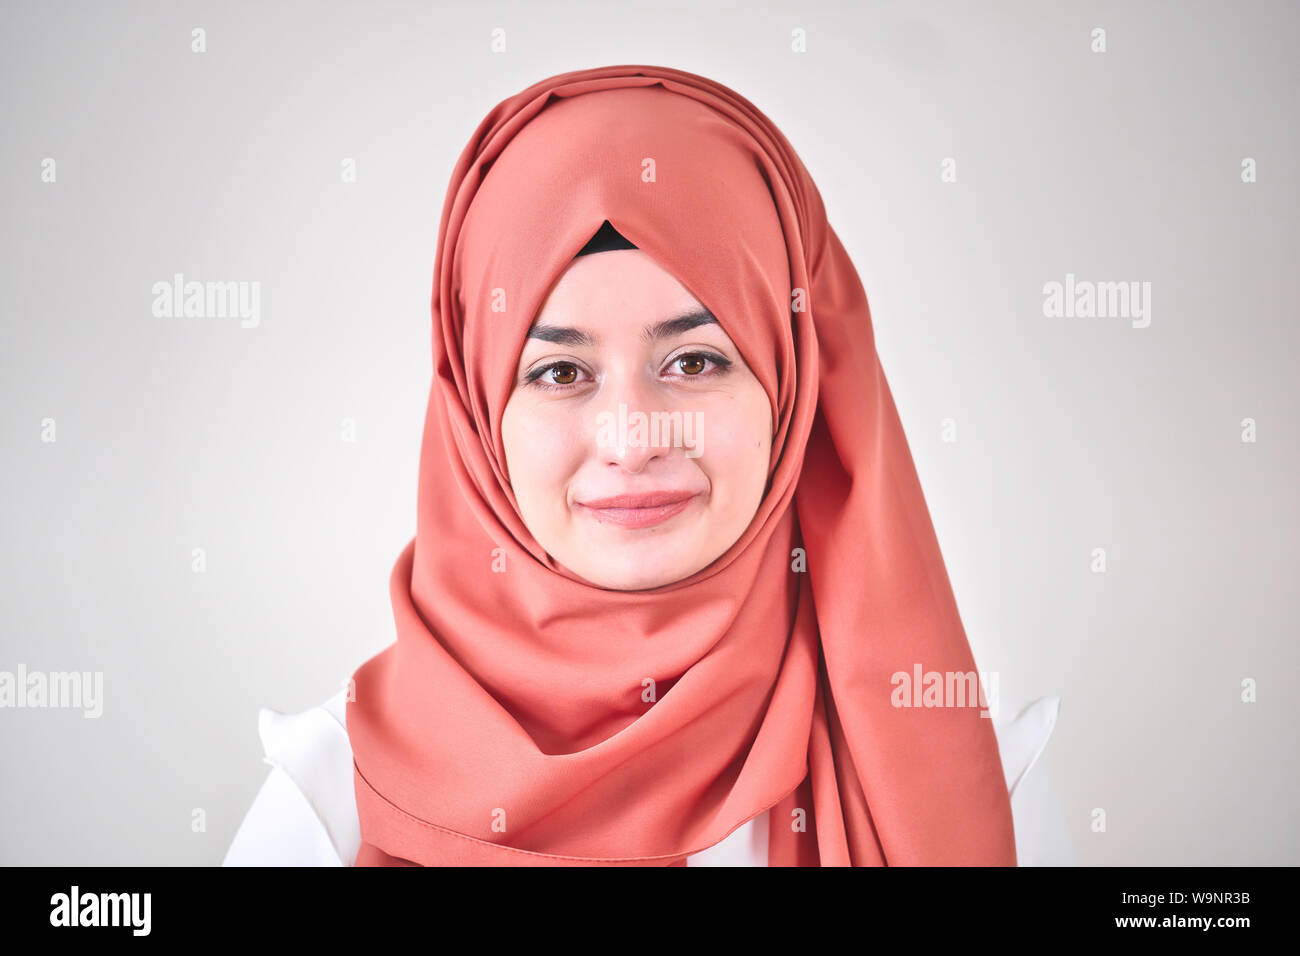 Foto ritratto del hijab donna musulmana, close up ritratto di ragazzina musulmana, sta cercando la fotocamera Foto Stock